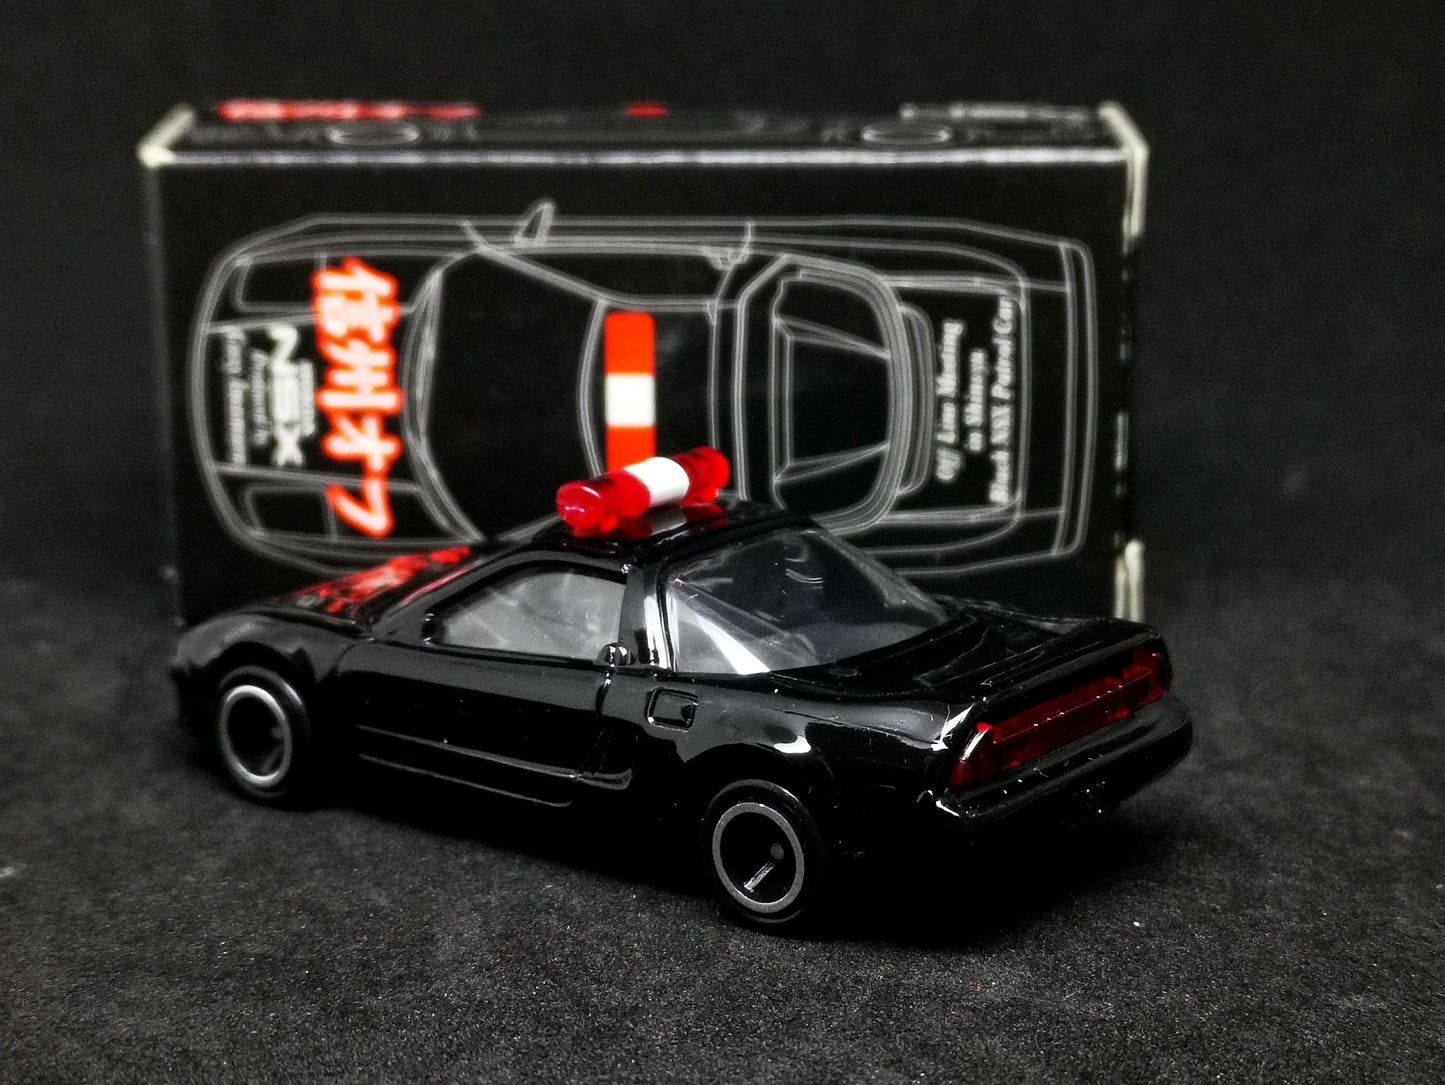 Tomica Honda NSX Black Patrol Car 信州オフ Imamura version limited edition